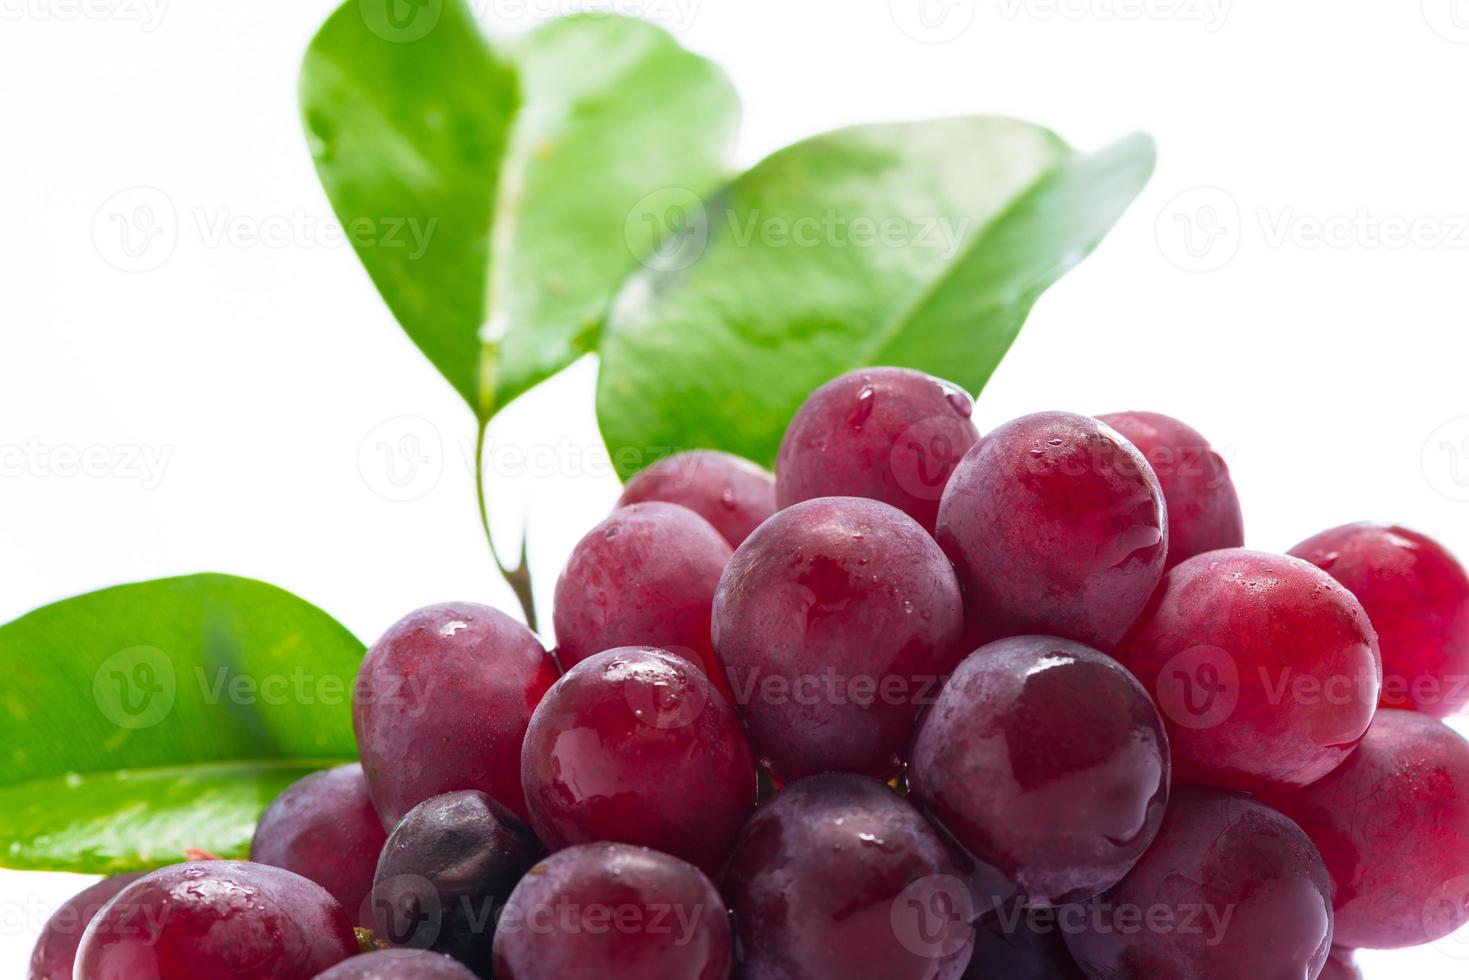 uvas rojas sobre acrílico blanco foto